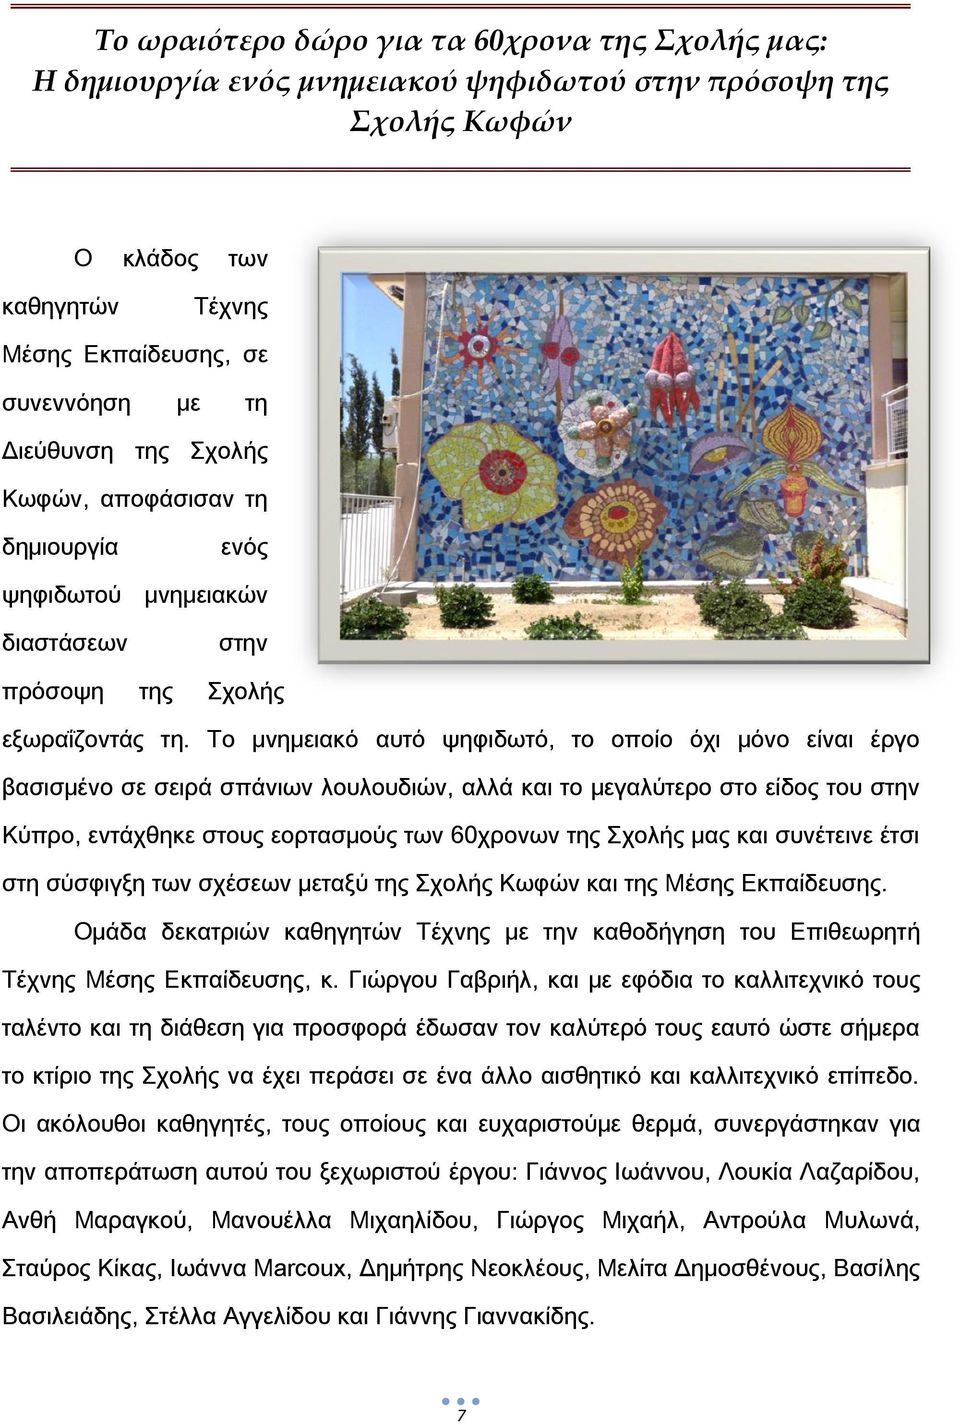 Σο μνημειακό αυτό ψηφιδωτό, το οποίο όχι μόνο είναι έργο βασισμένο σε σειρά σπάνιων λουλουδιών, αλλά και το μεγαλύτερο στο είδος του στην Κύπρο, εντάχθηκε στους εορτασμούς των 60χρονων της χολής μας